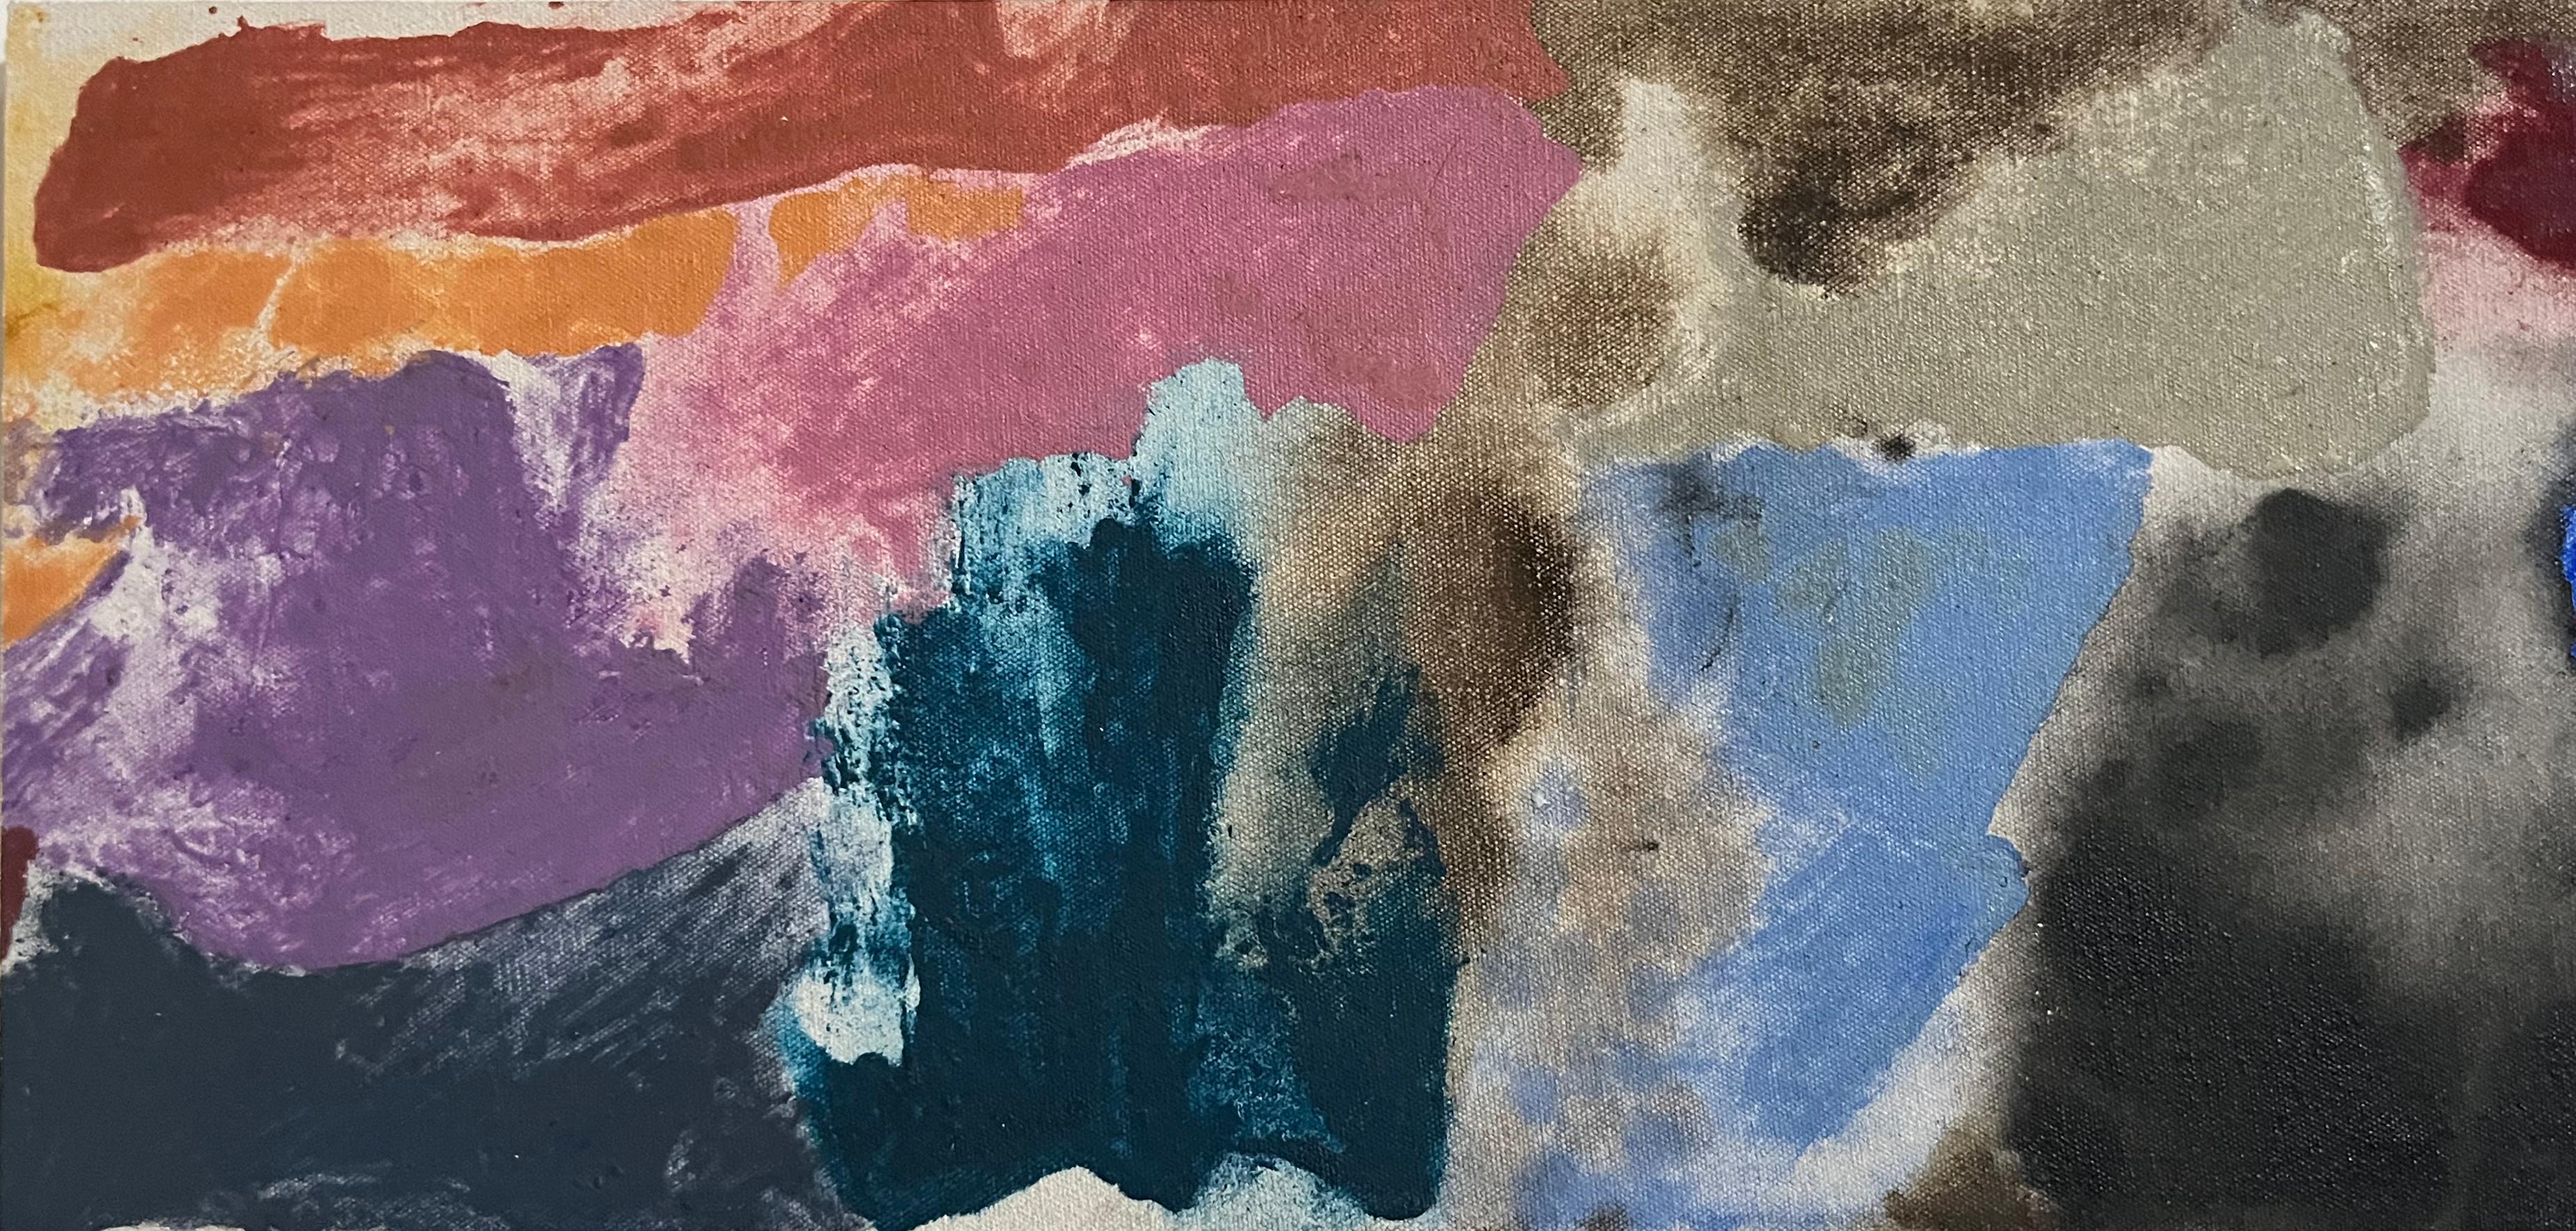 Friedel Dzubas, figure éminente de l'école de New York, a marqué de son empreinte le mouvement de la peinture Color Field au milieu du XXe siècle, persistant dans ses efforts artistiques jusqu'à ses dernières années. Dans le milieu artistique